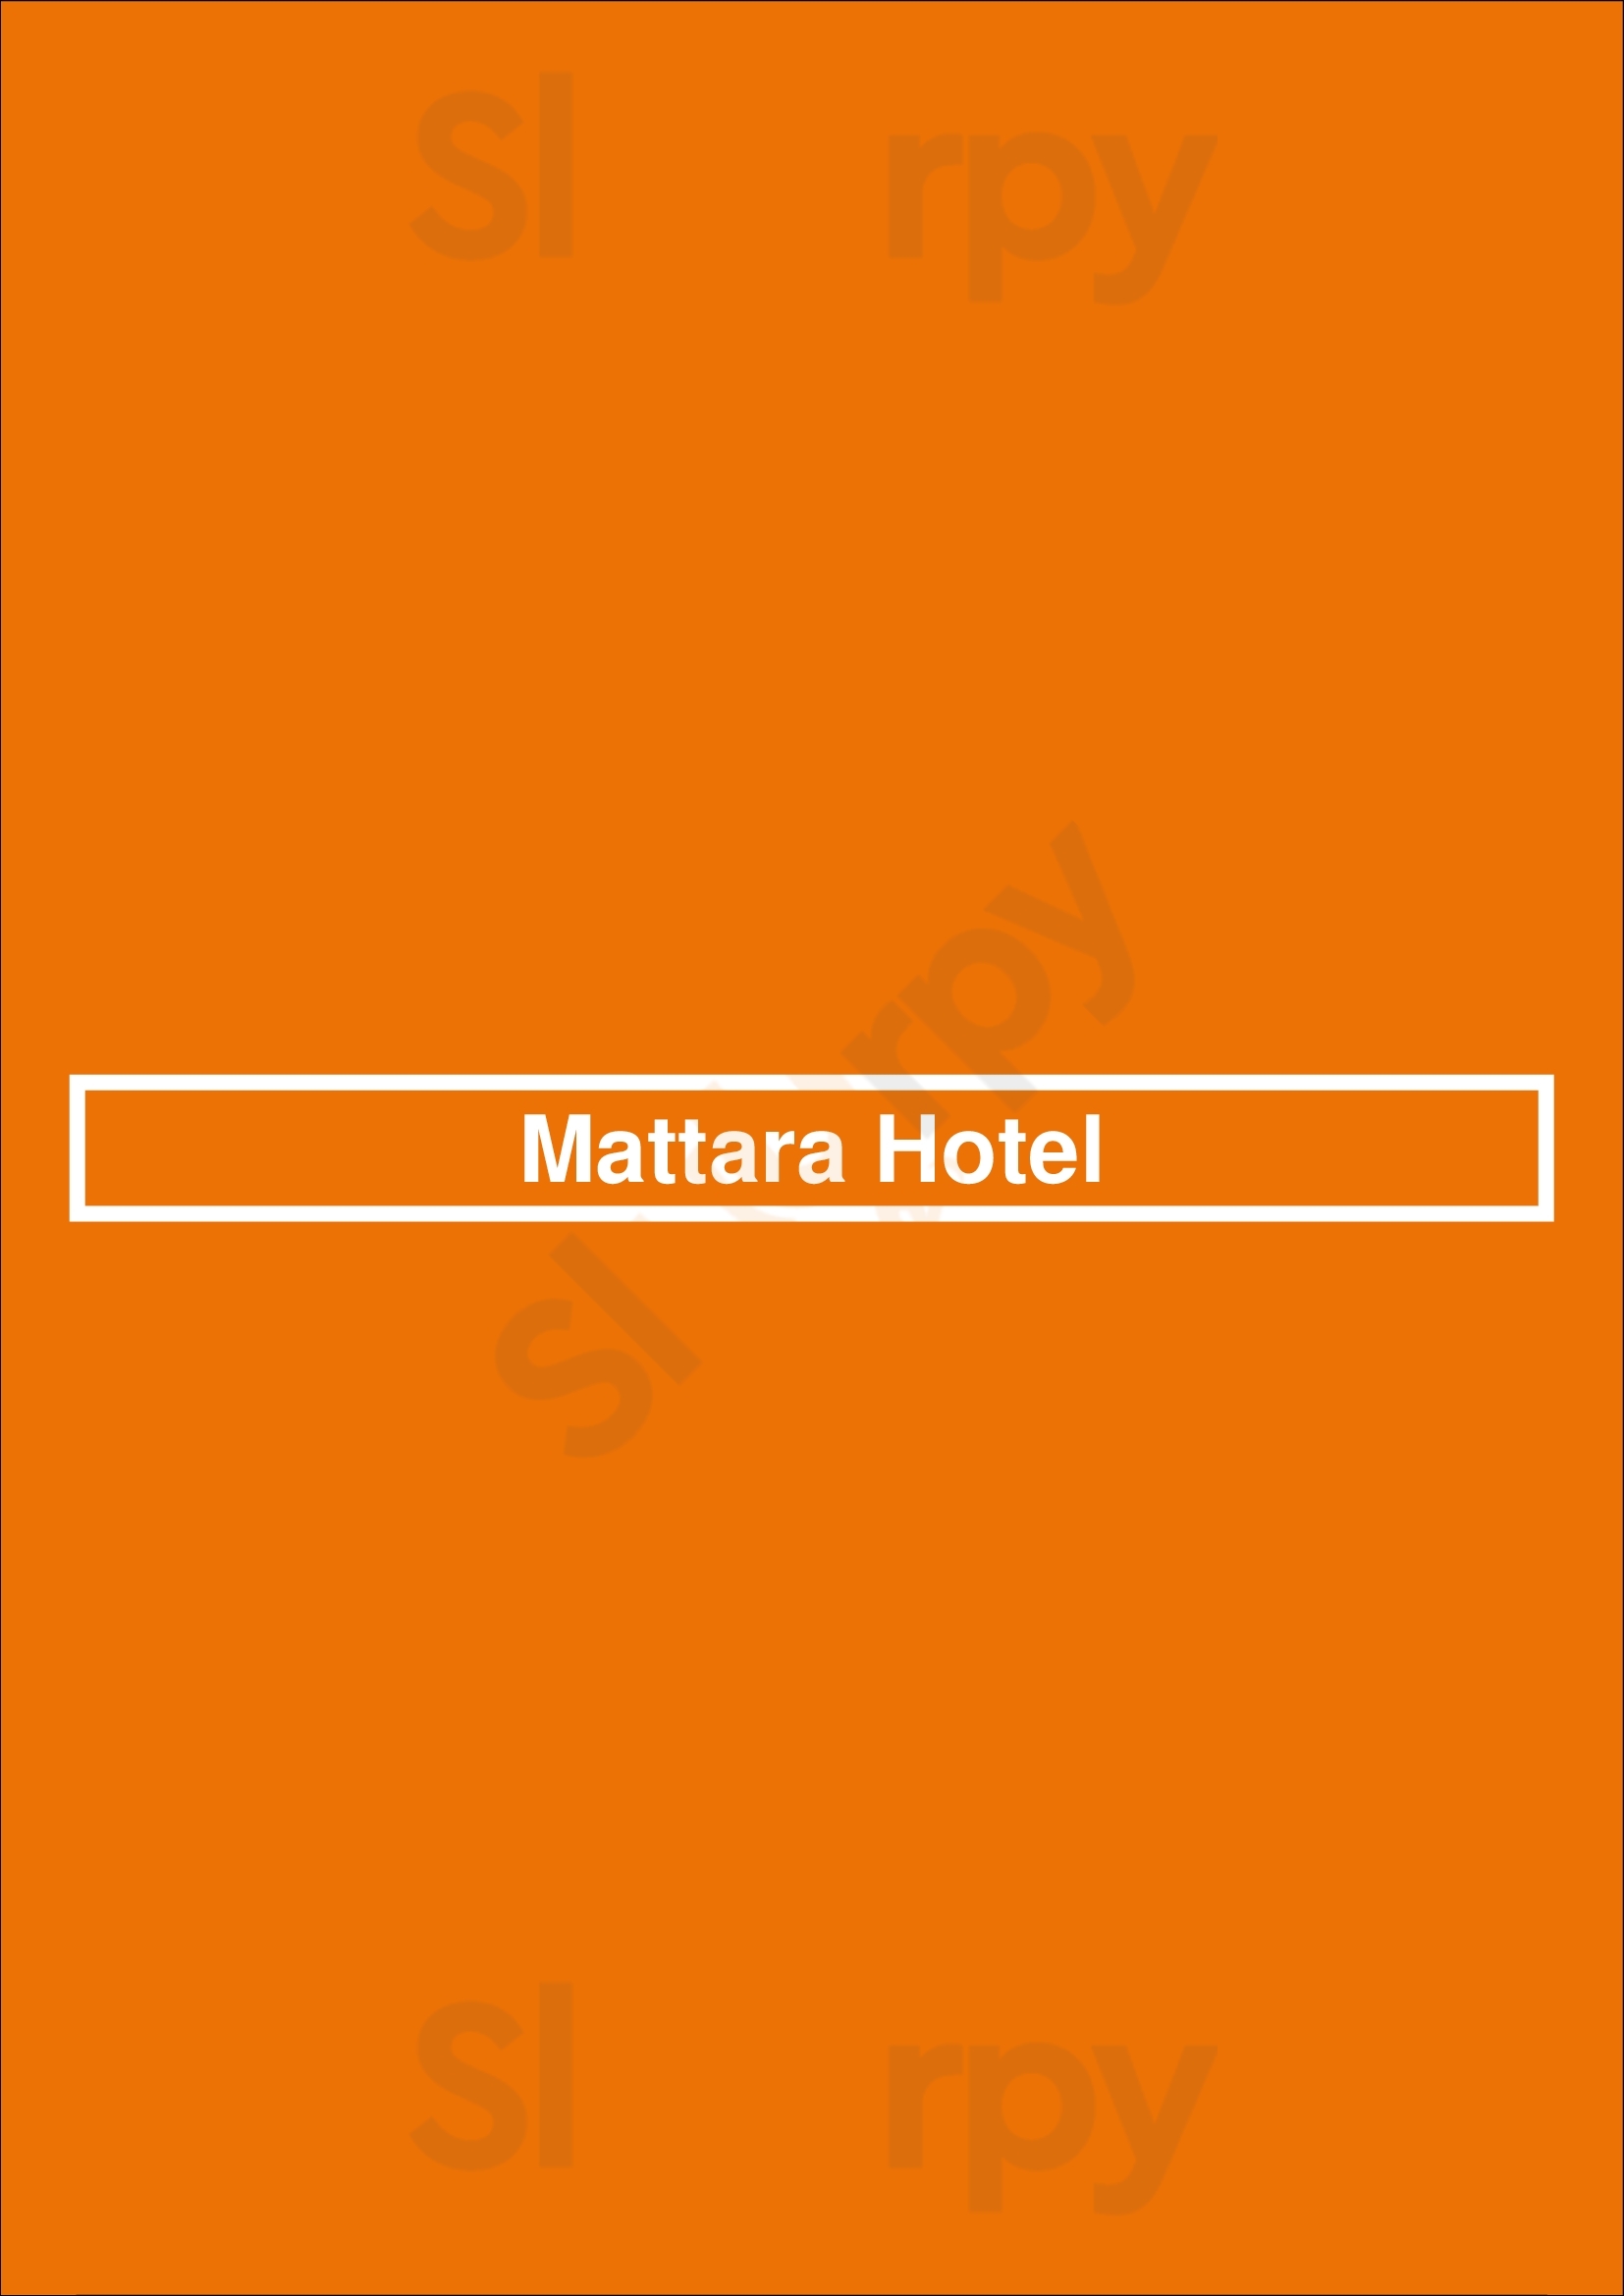 Mattara Hotel Newcastle Menu - 1